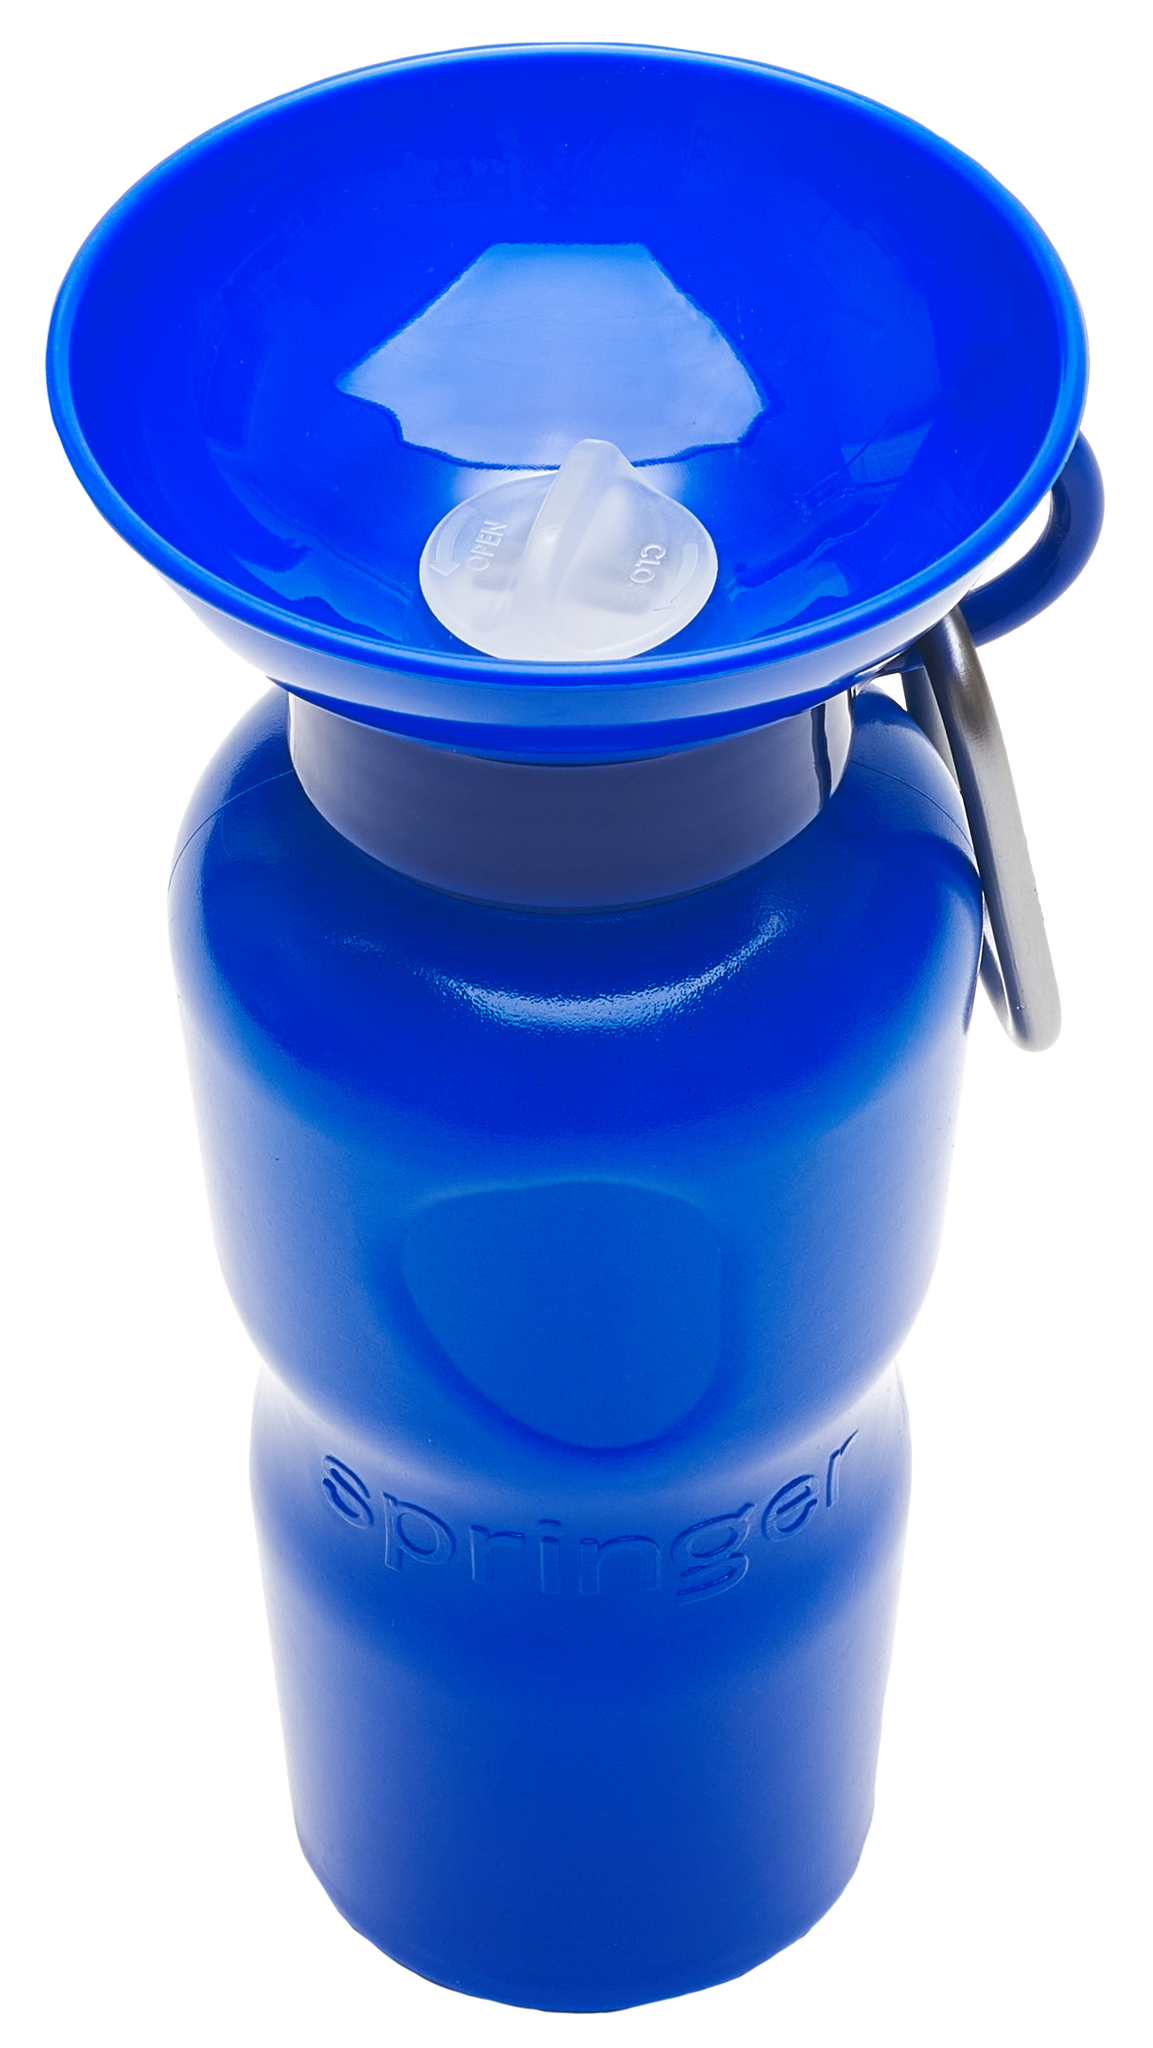 Springer Dog Water Bottle | Portable Travel Water Bottle Dispenser For Dogs  - As Seen on Shark Tank | Patented, Leak-Proof Bottles Fill Bowl With